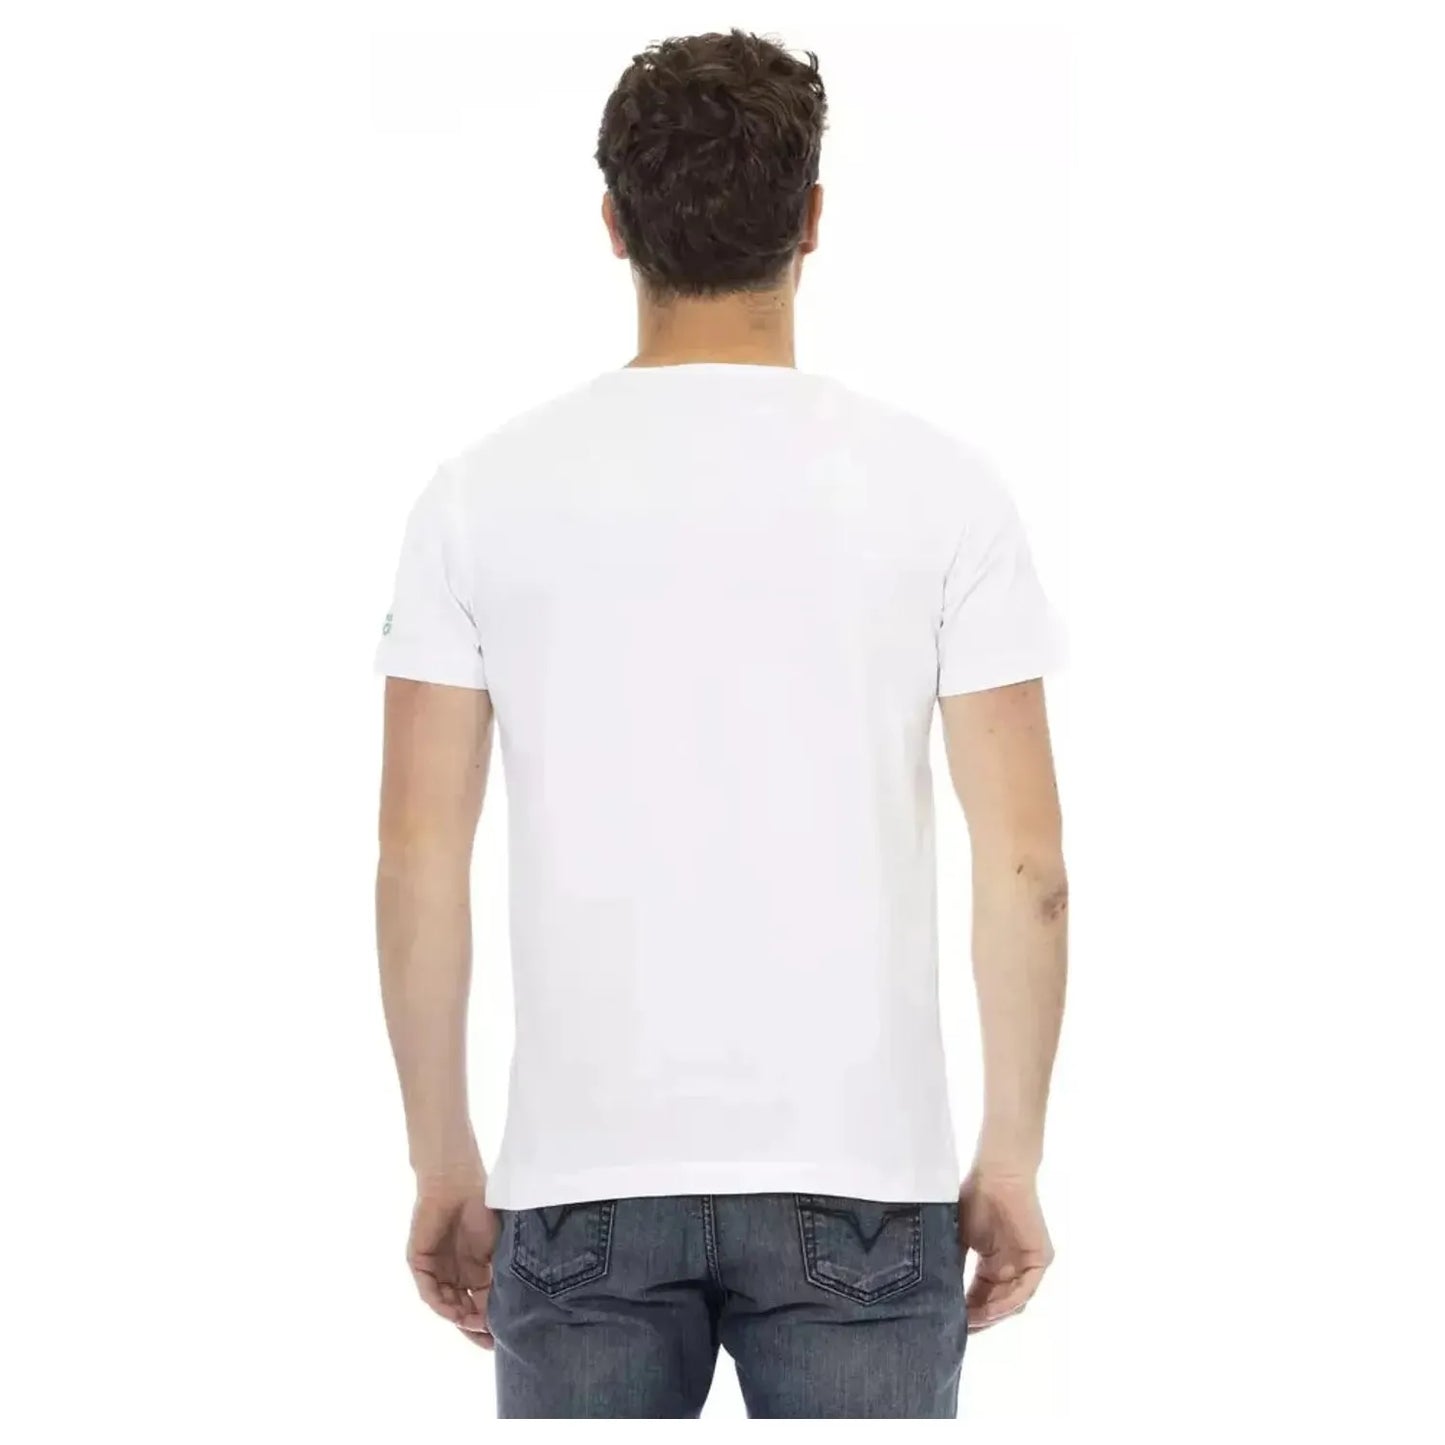 Trussardi Action Elegant White Cotton Blend Tee white-cotton-t-shirt-126